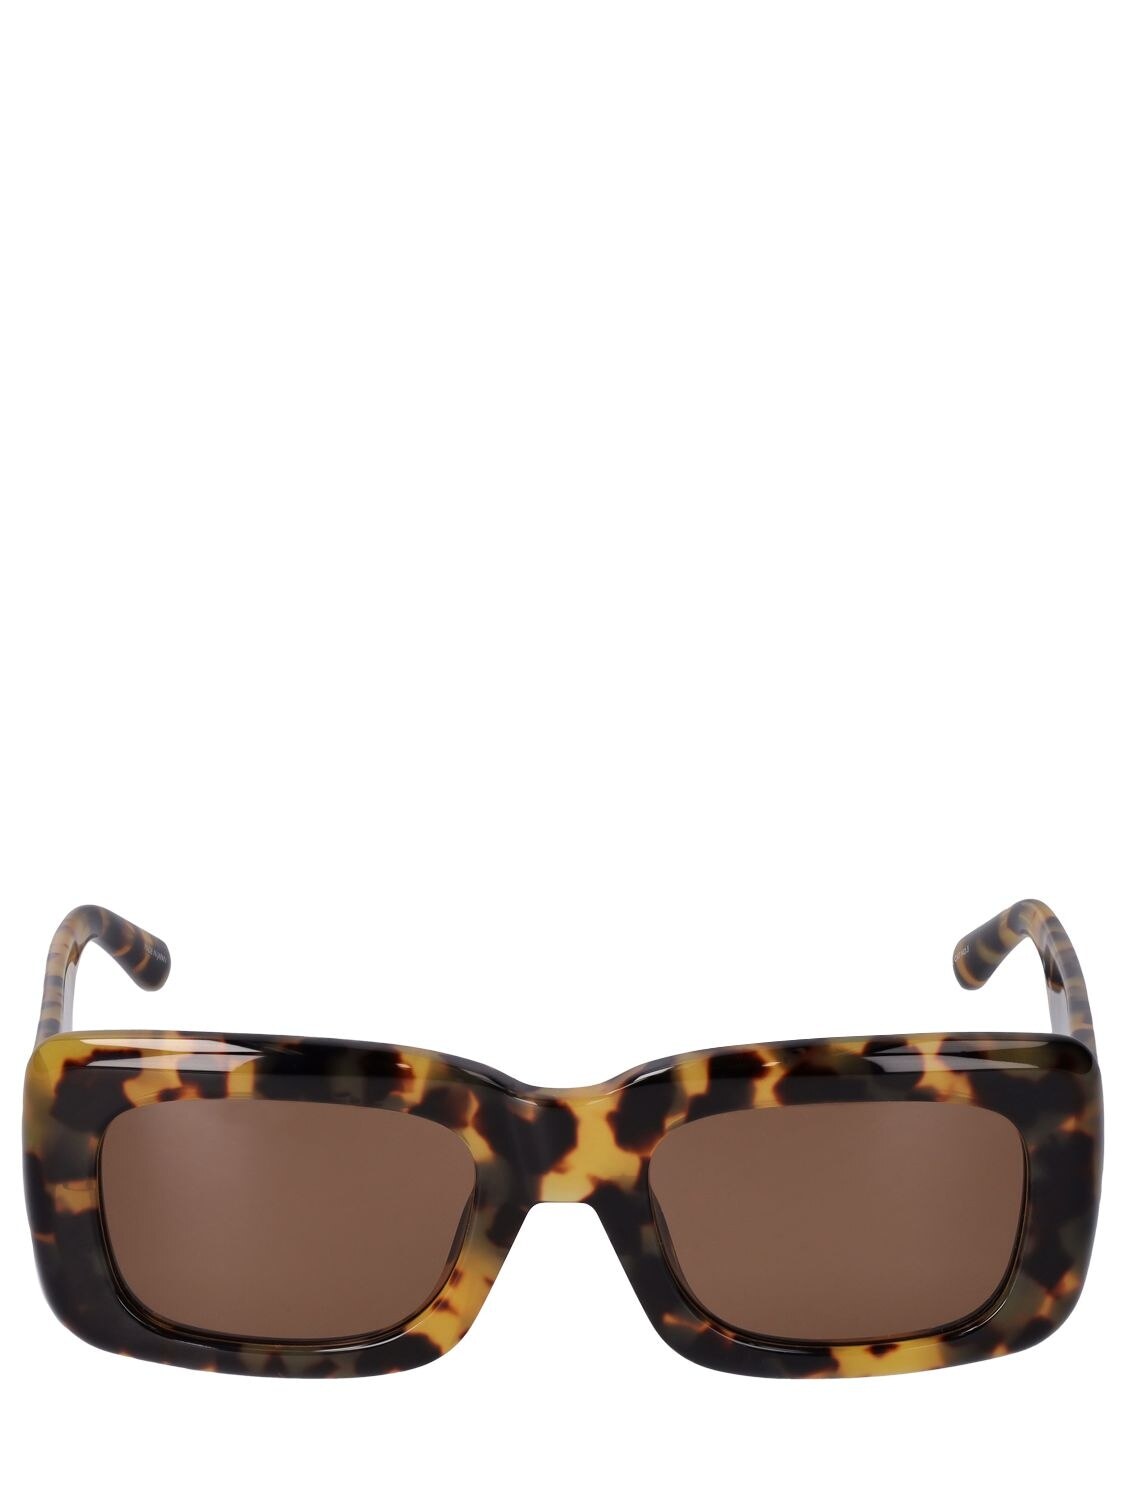 THE ATTICO Marfa Squared Acetate Sunglasses in brown